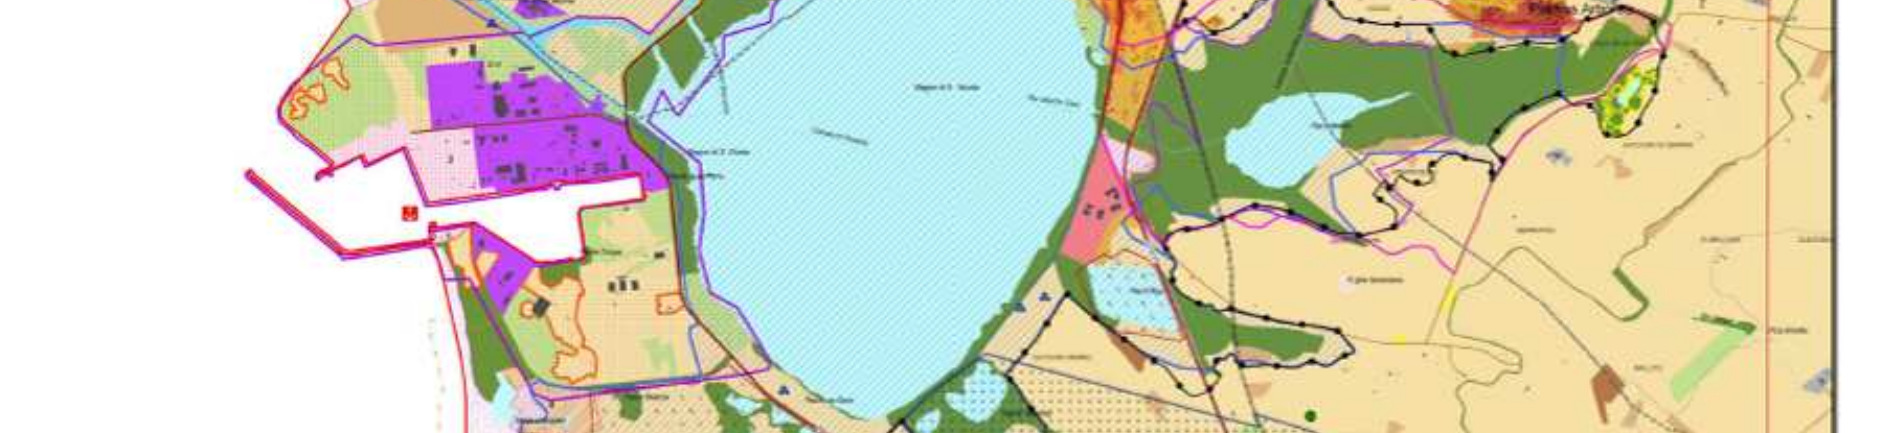 14 delle Norme di Attuazione (NTA) del Piano Paesaggistico Regionale (PPR), denominato Ambito Costiero n.9 Golfo di Oristano.